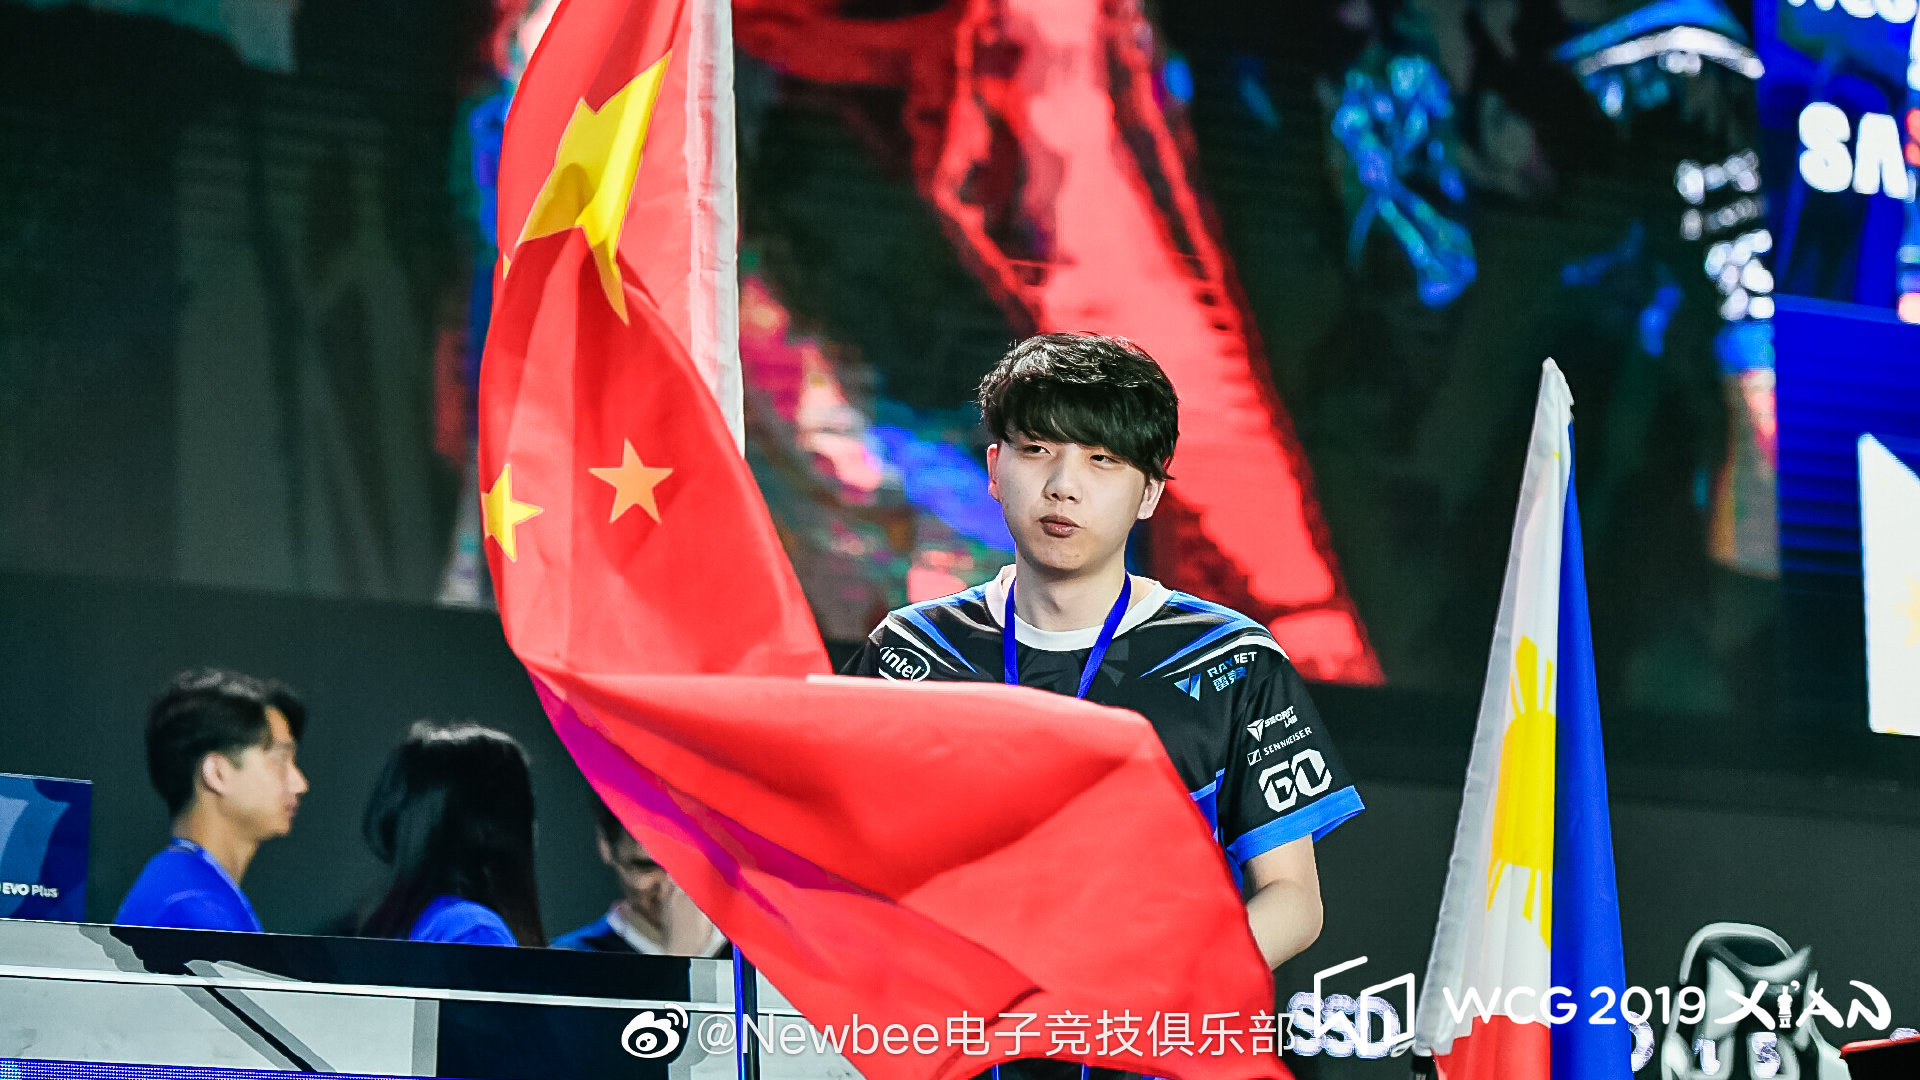 牌面！CCTV报道WCG 2019中国DOTA2战队夺冠